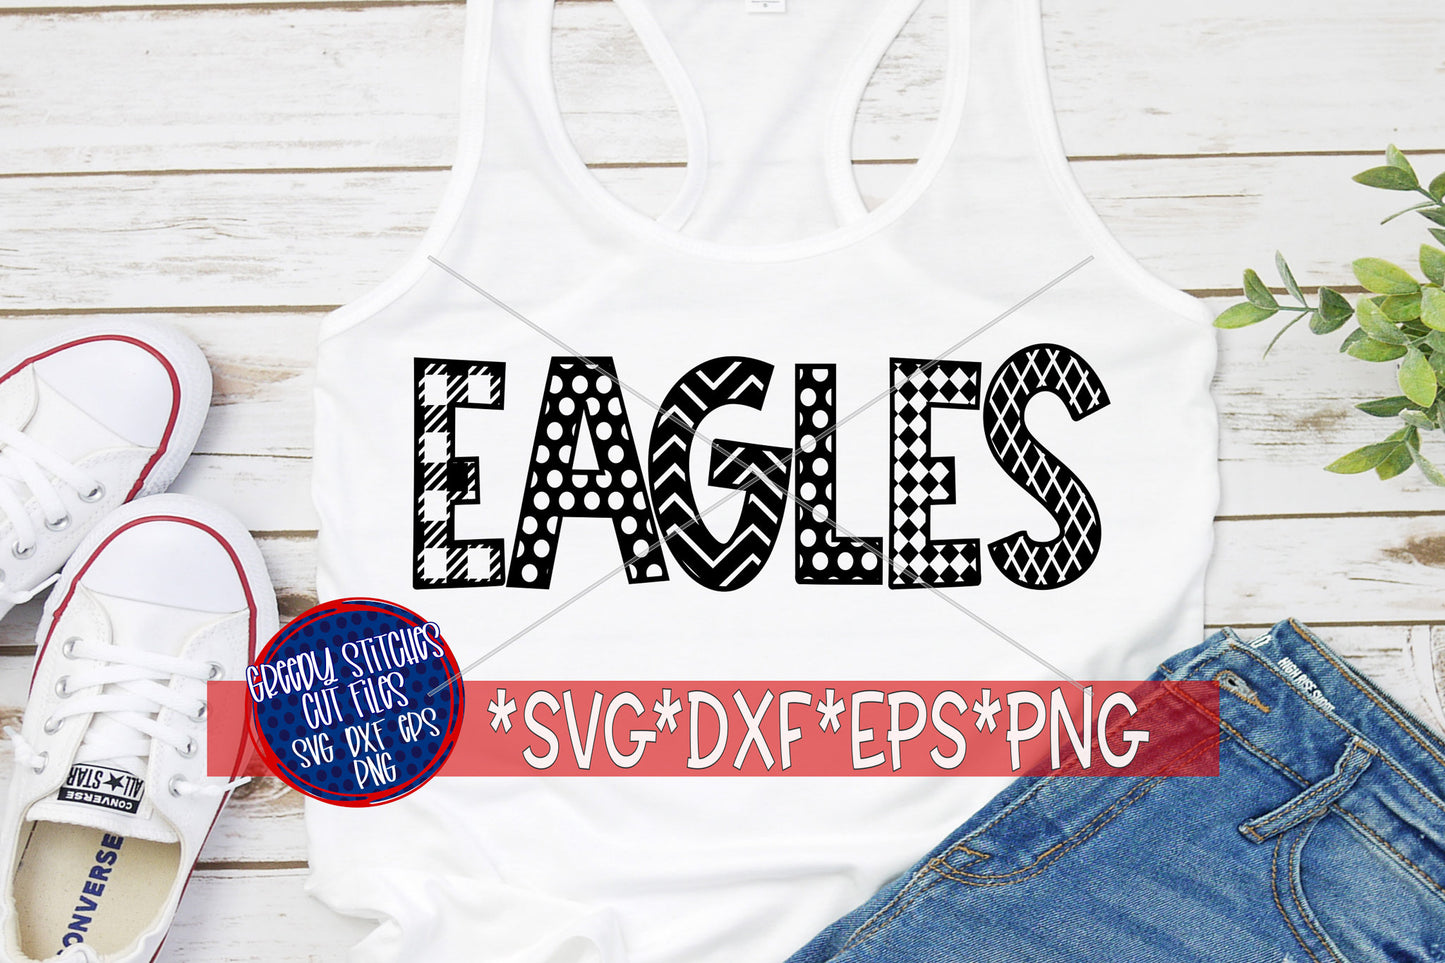 Eagles SvG | Eagles svg dxf eps png. Eagles word art SvG | Eagles word art DxF | Eagles Word Art SvG | Eagles | Instant Download Cut File